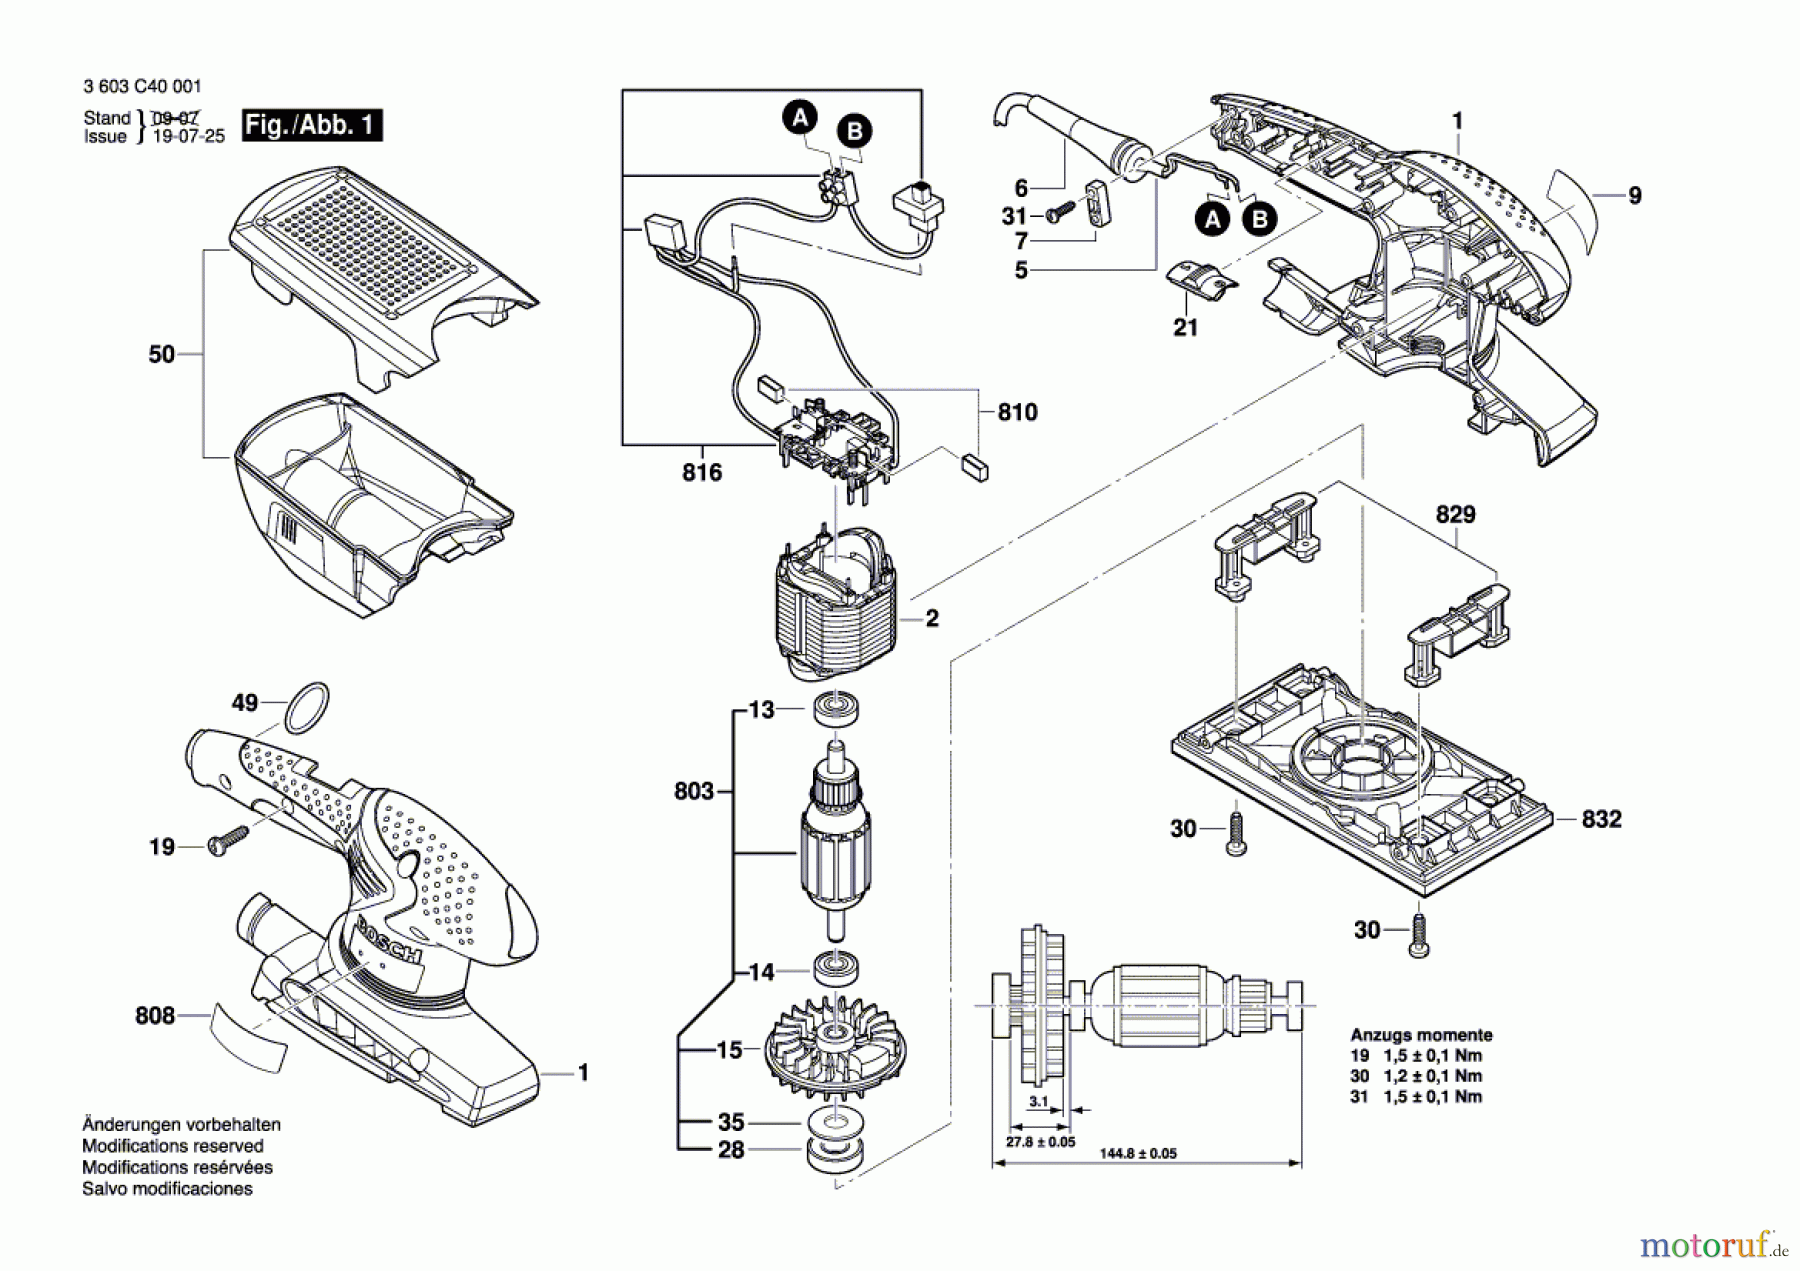  Bosch Werkzeug Schwingschleifer PSS 200 A Seite 1